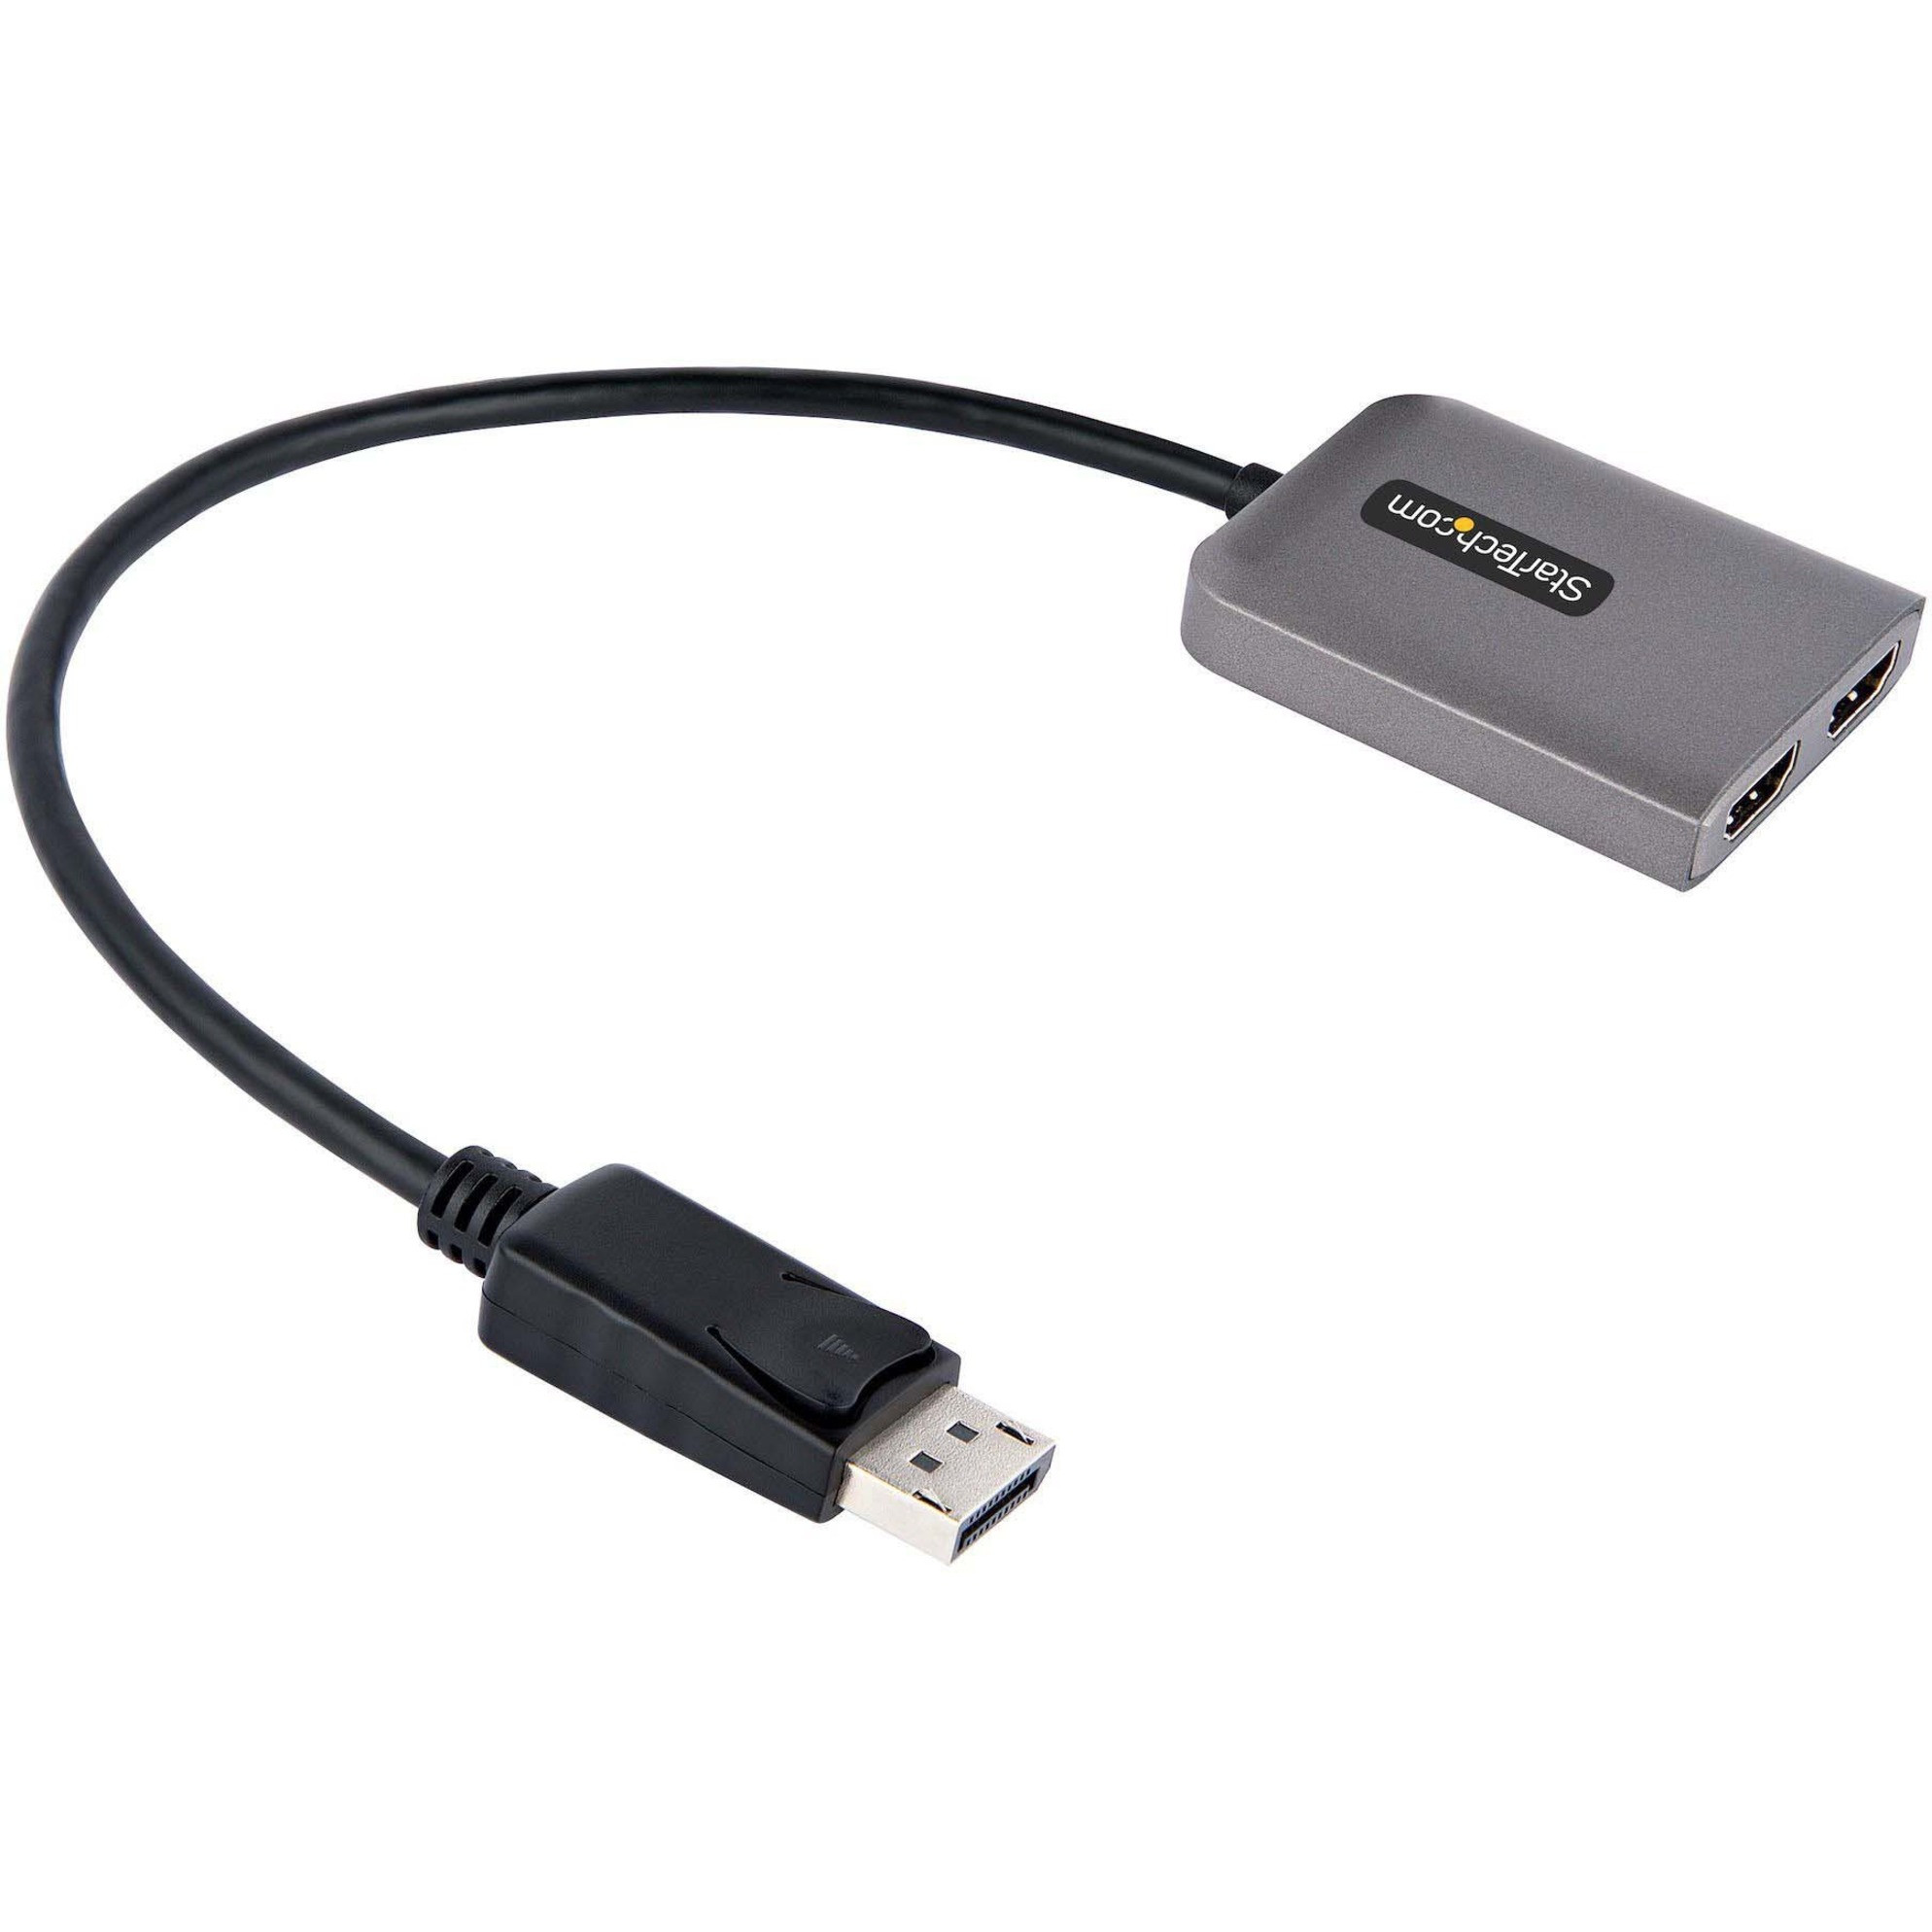 4K 60Hz MST USB C to Dual HDMI Hub